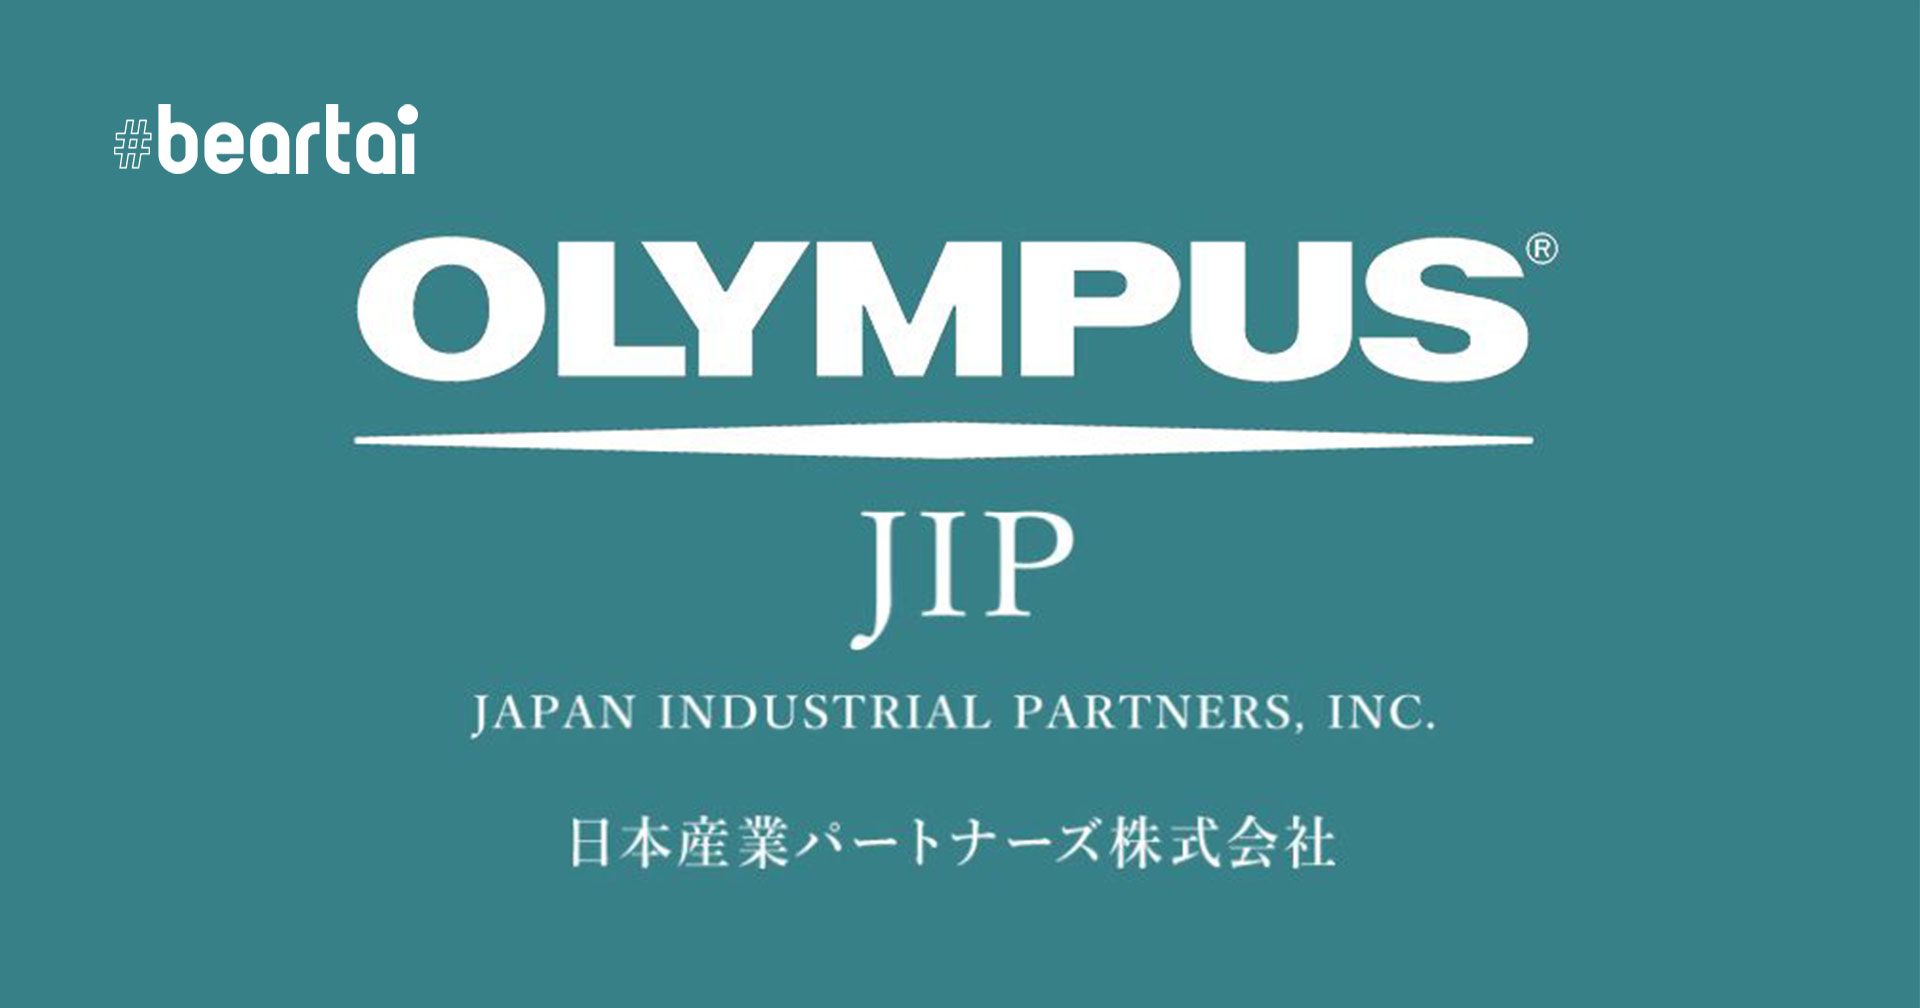 ส่งไม้ต่อเรียบร้อย Olympus โอนธุรกิจถ่ายภาพให้แก่ JIP เสร็จสิ้นแล้ว ในนามบริษัทใหม่ OM Digital Solutions Corporation